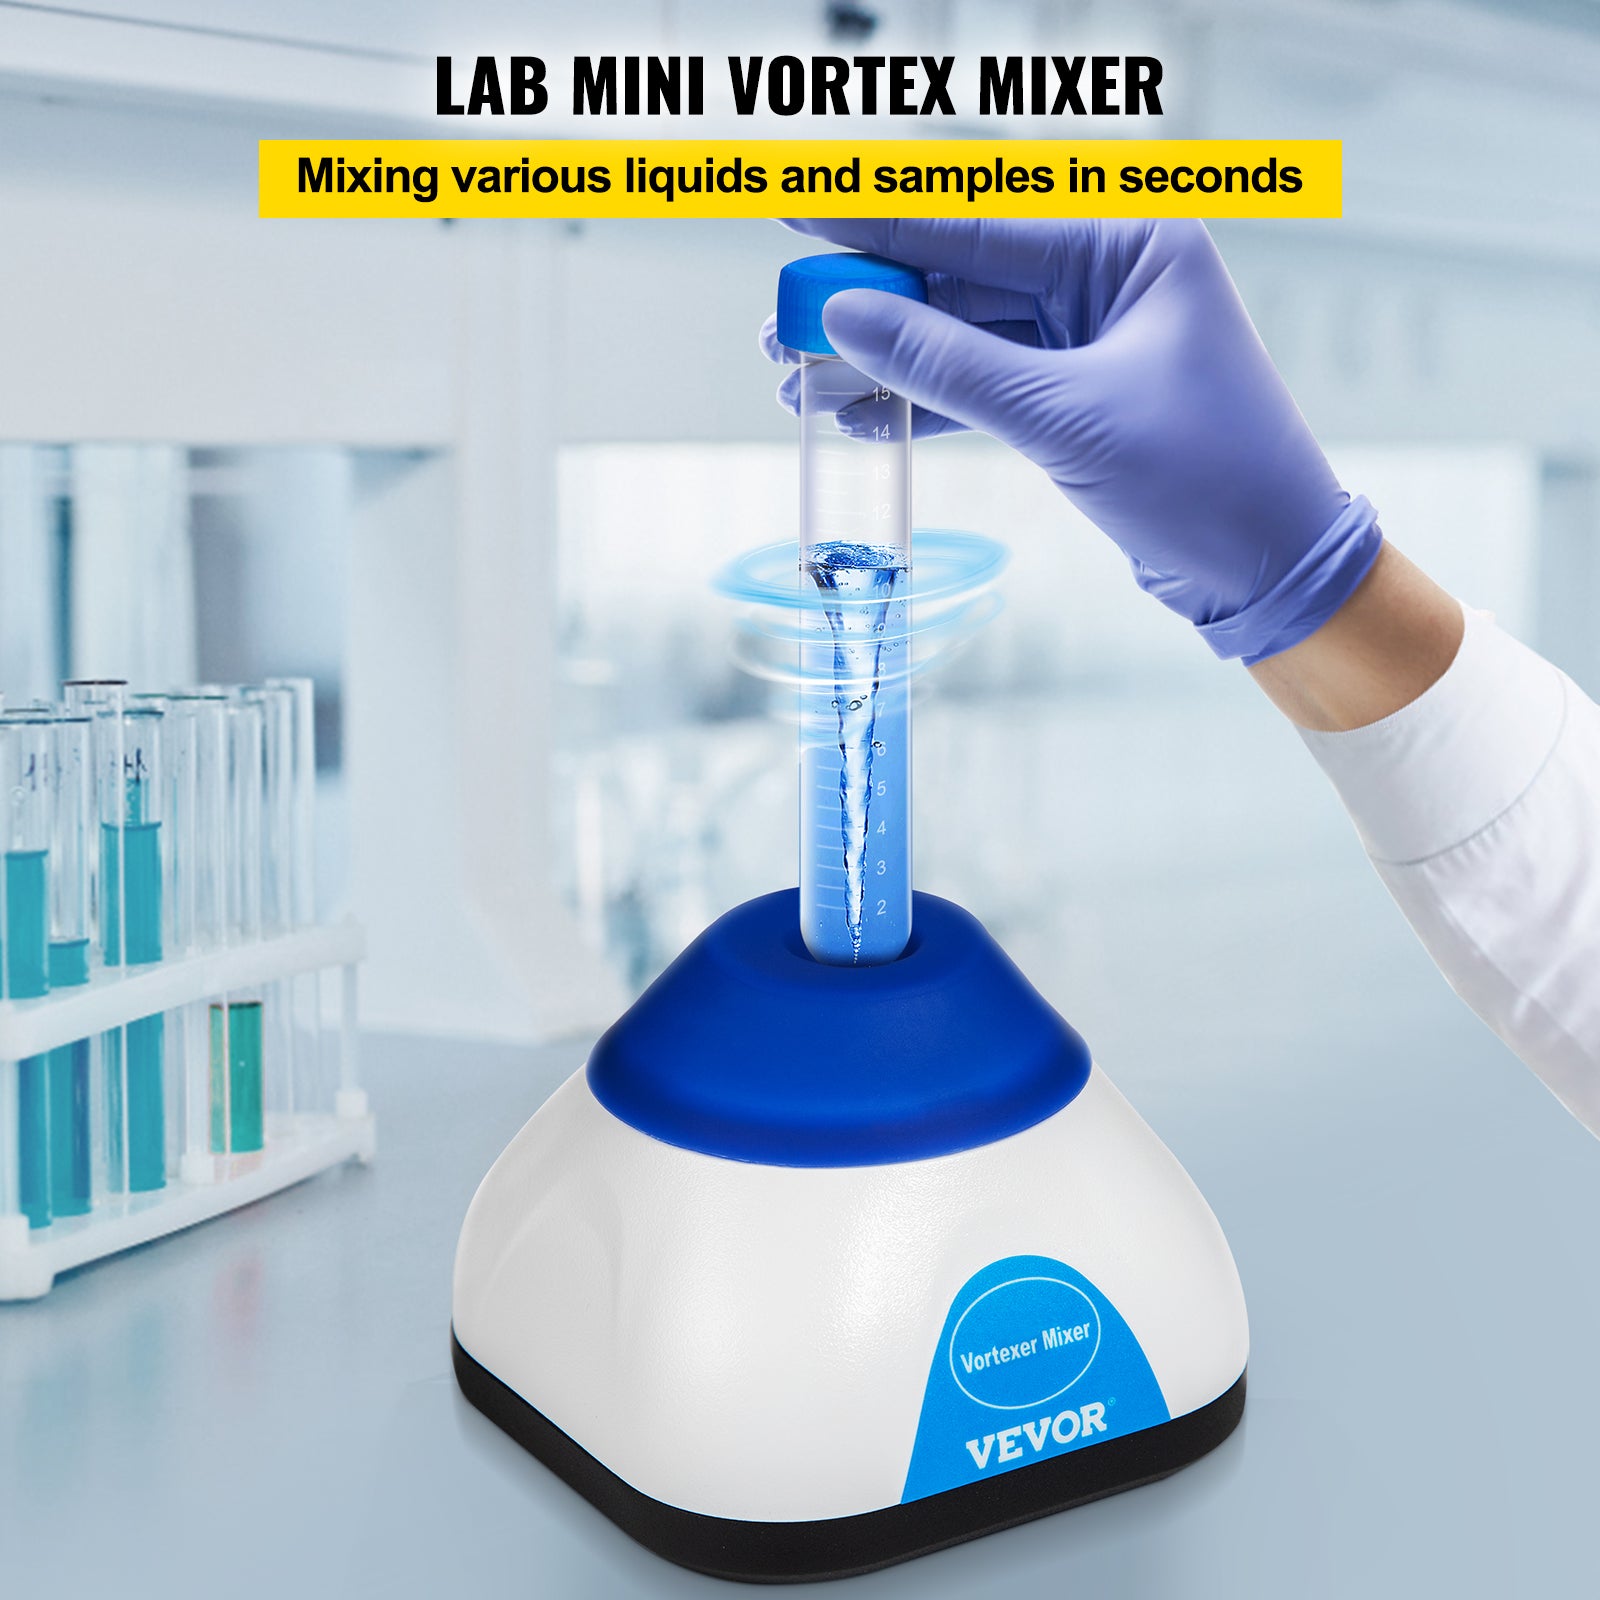 Lab Mini Vortex Mixer, 3000/6000 varv per minut, 6mm orbital diameter, enhandstouch operation.